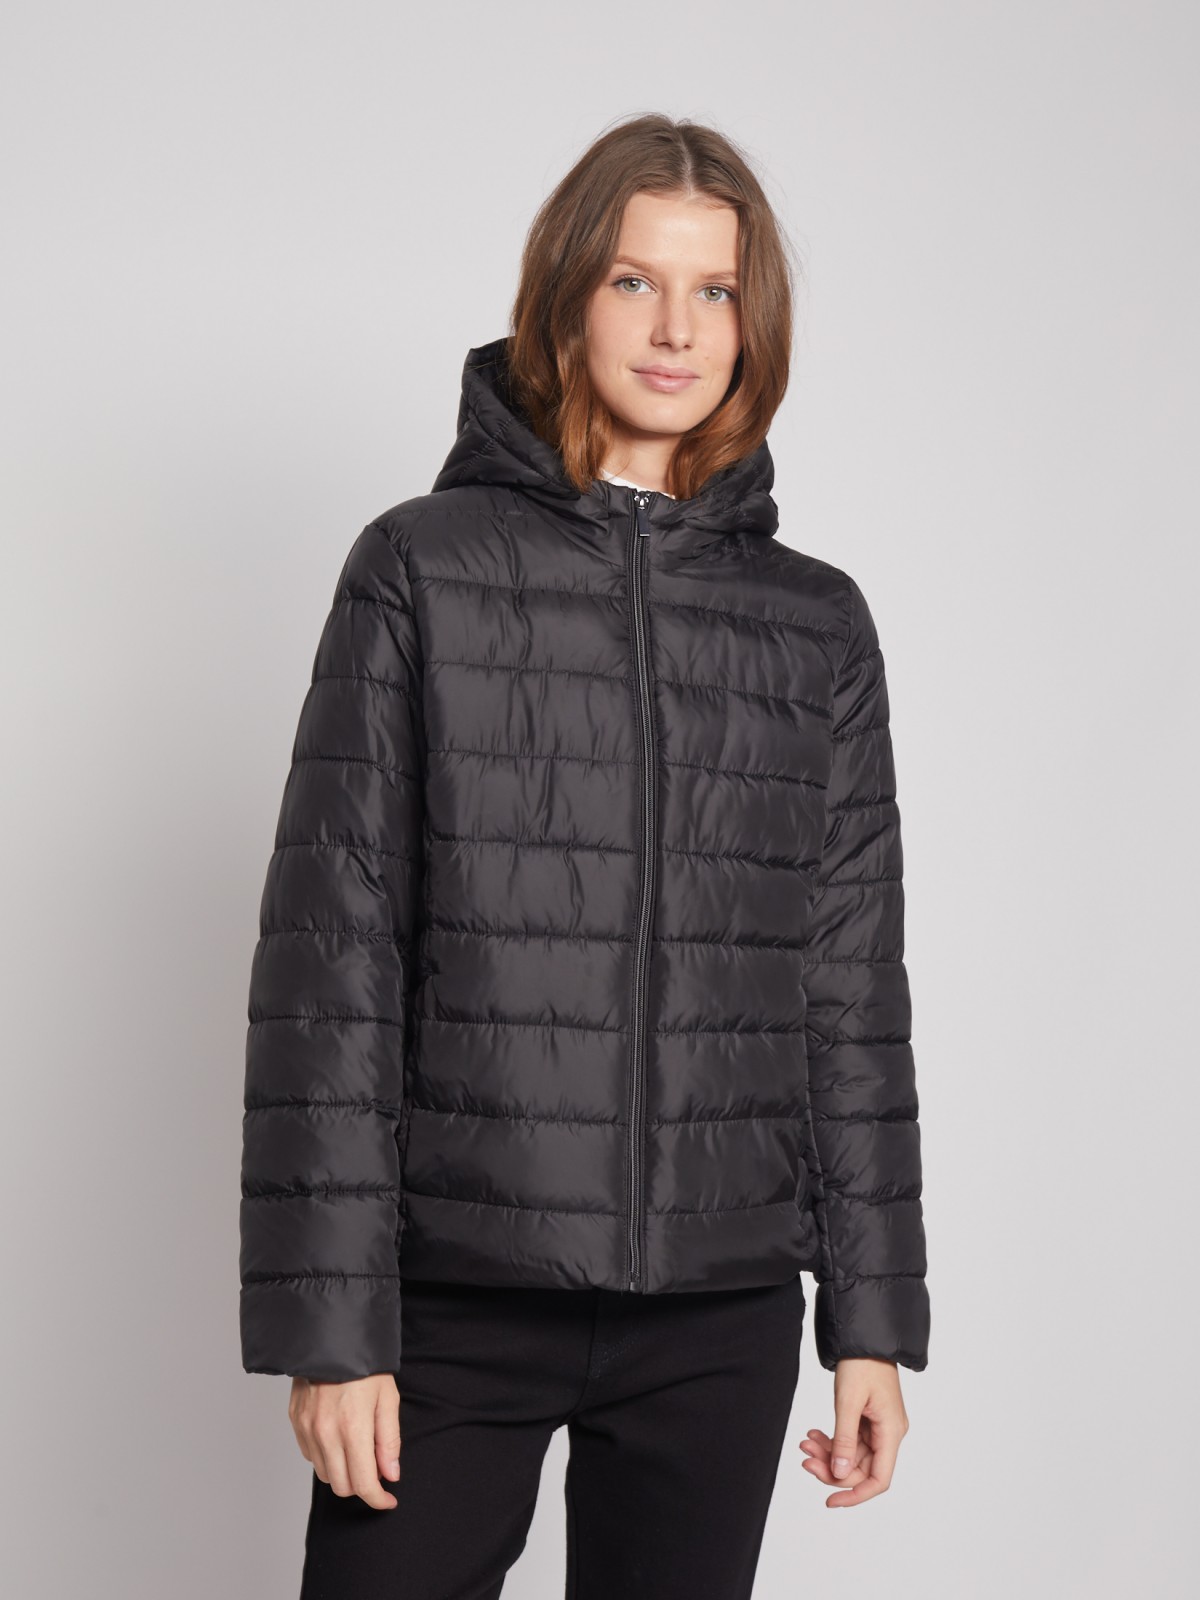 Утеплённая стёганая куртка с капюшоном zolla 022335112044, цвет черный, размер S - фото 3